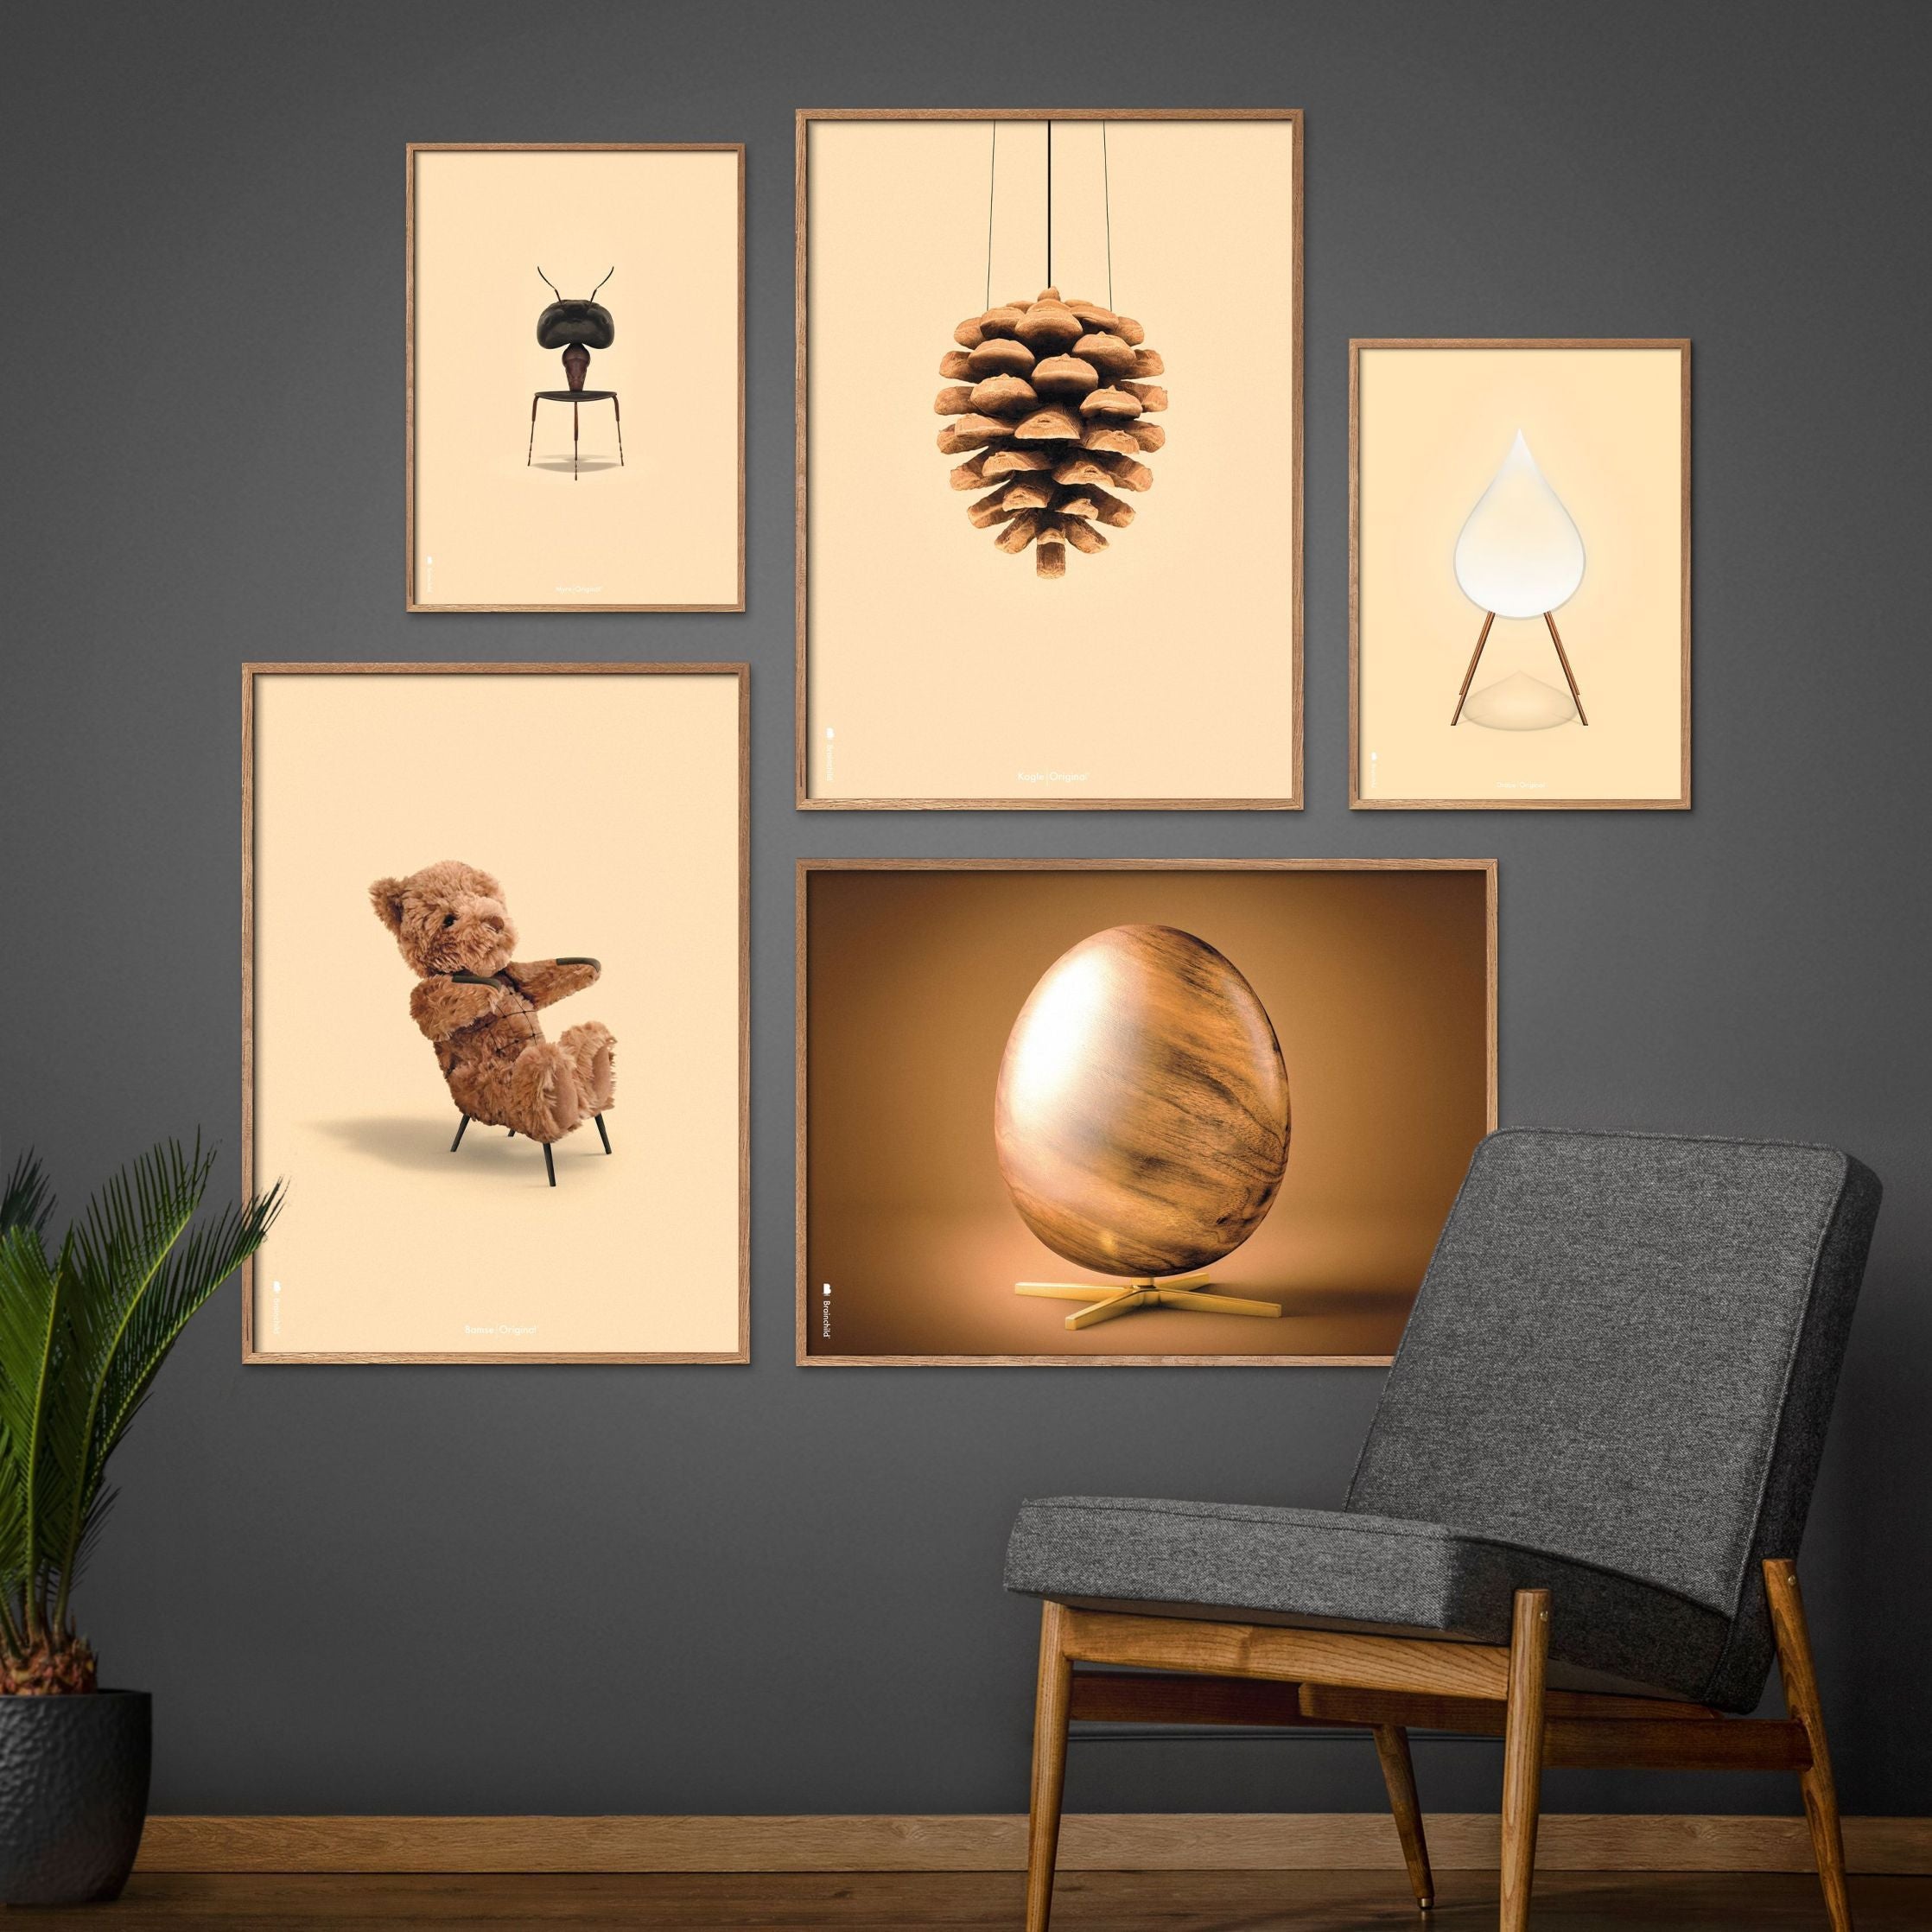 Brainchild Egg Cross Format Poster, Frame Made Of Dark Wood 50x70 Cm, Brown